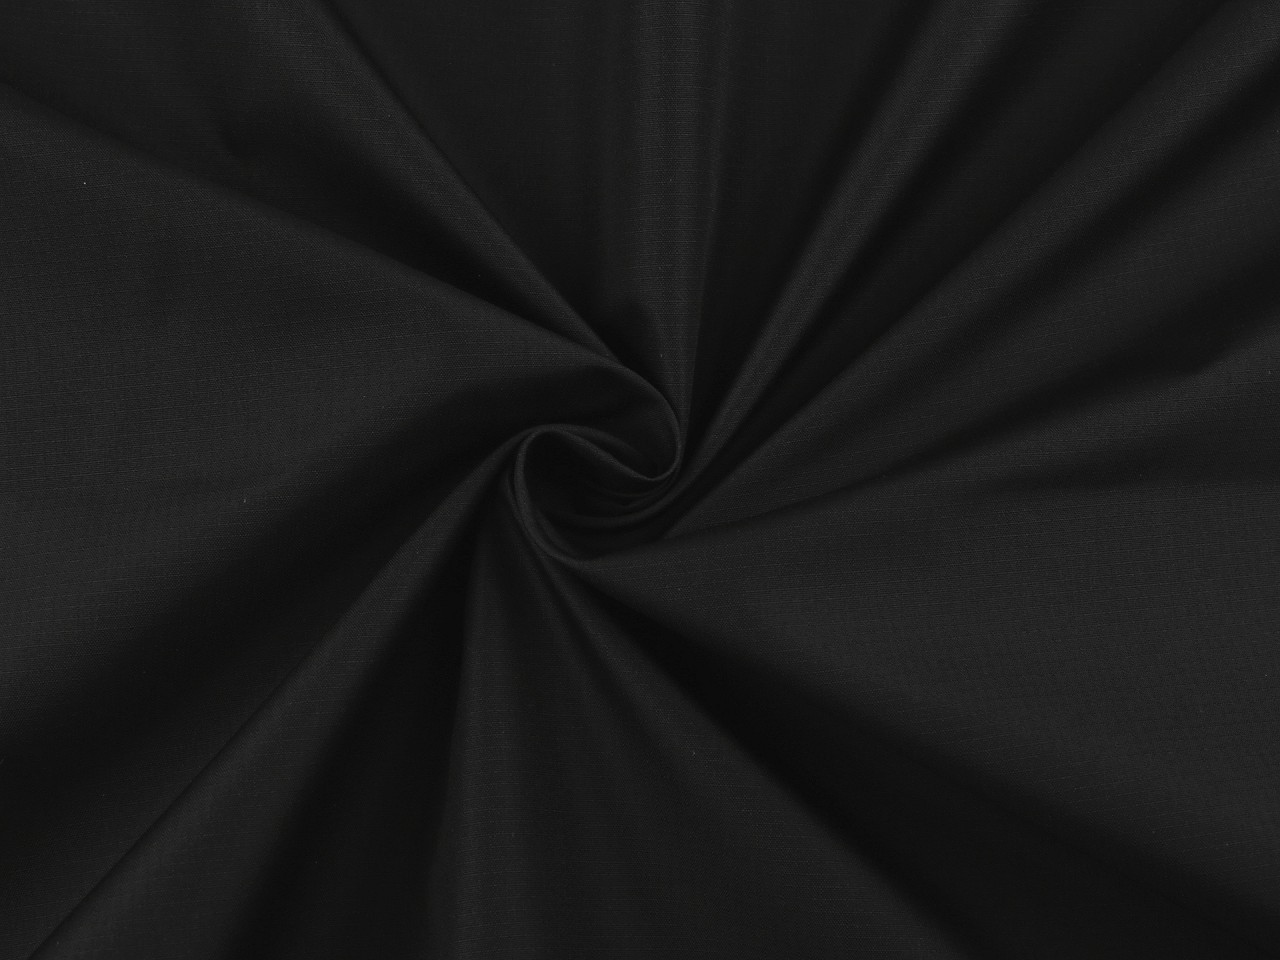 Šusťákovina s ripstop strukturou, barva 4 (332) černá